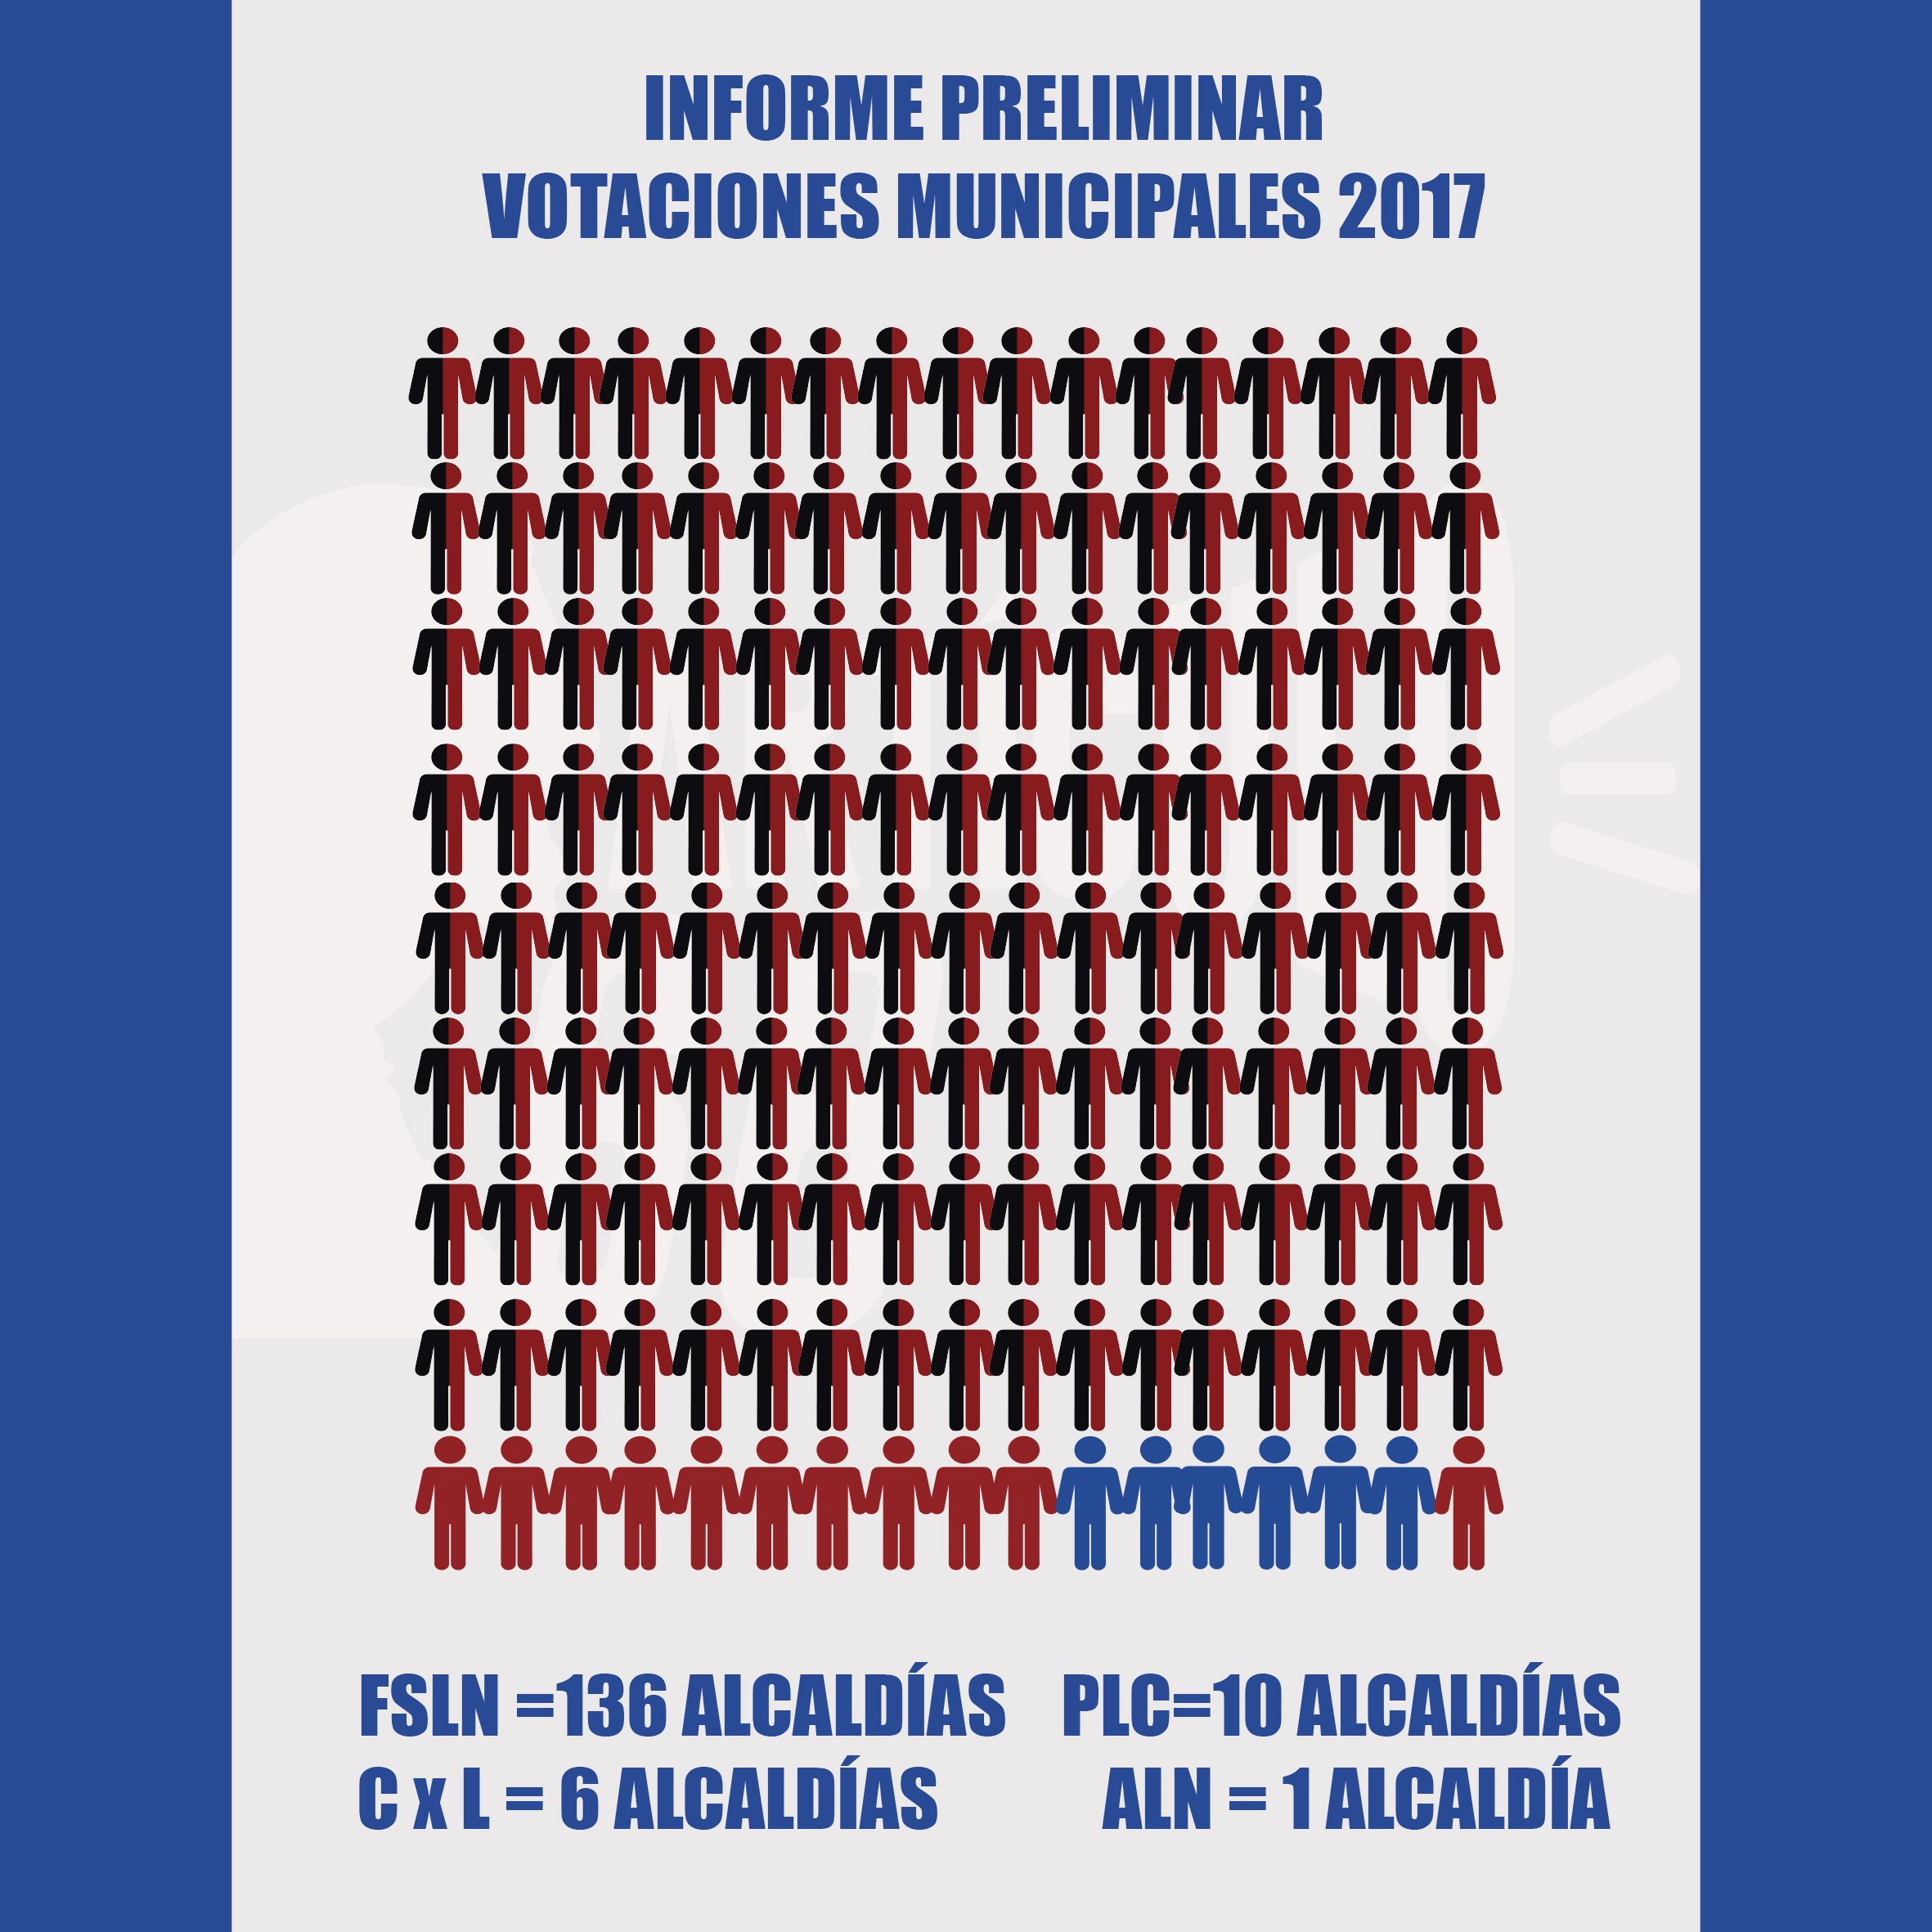 Informe preliminar del CSE que contiene el número de alcaldías otorgadas a los partidos que participaron en la votación municipal 2017. Infografía: Rosa María Blandón.